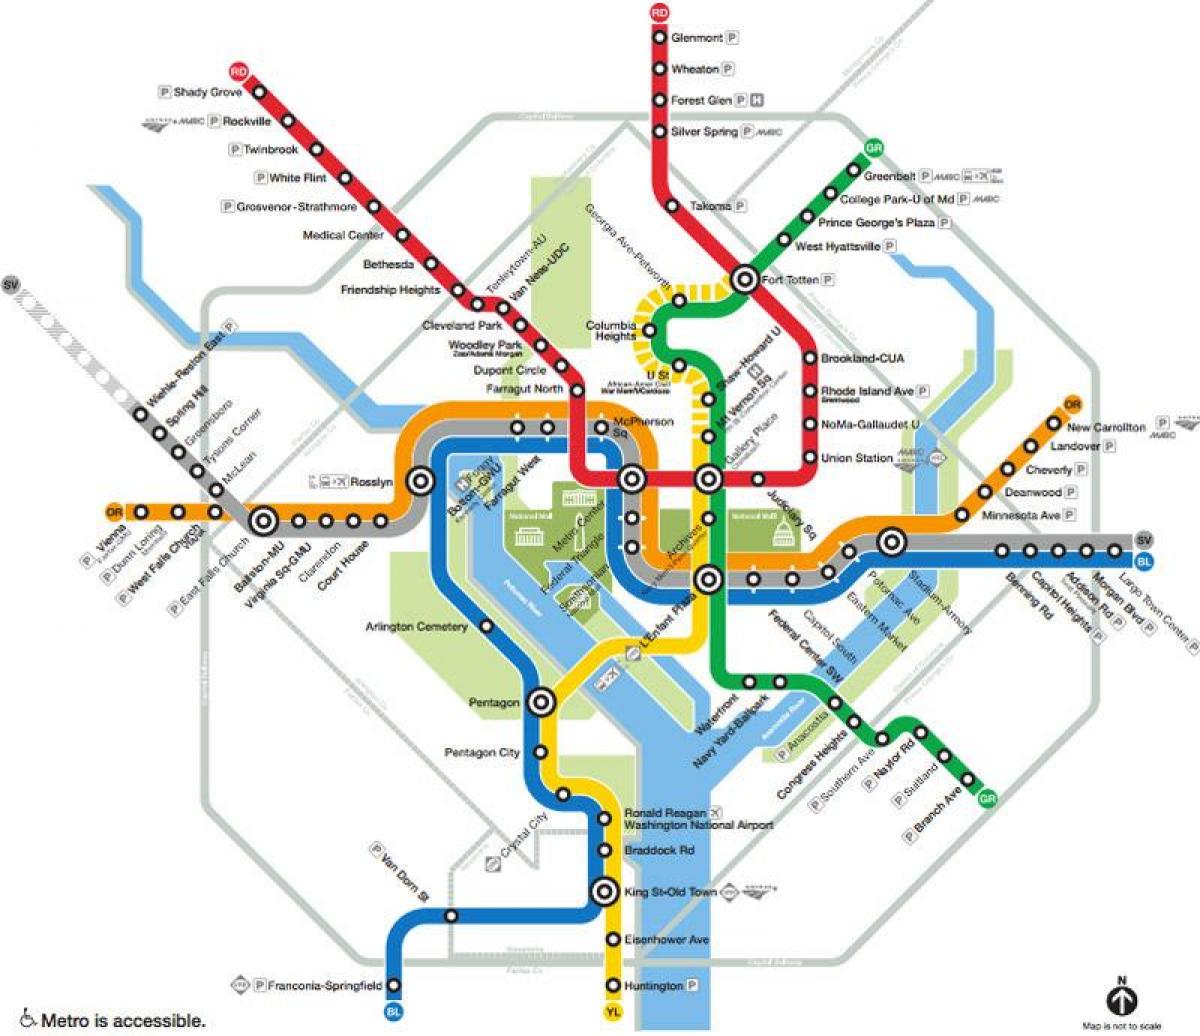 واشنگٹن ڈی سی ٹرین کا نقشہ